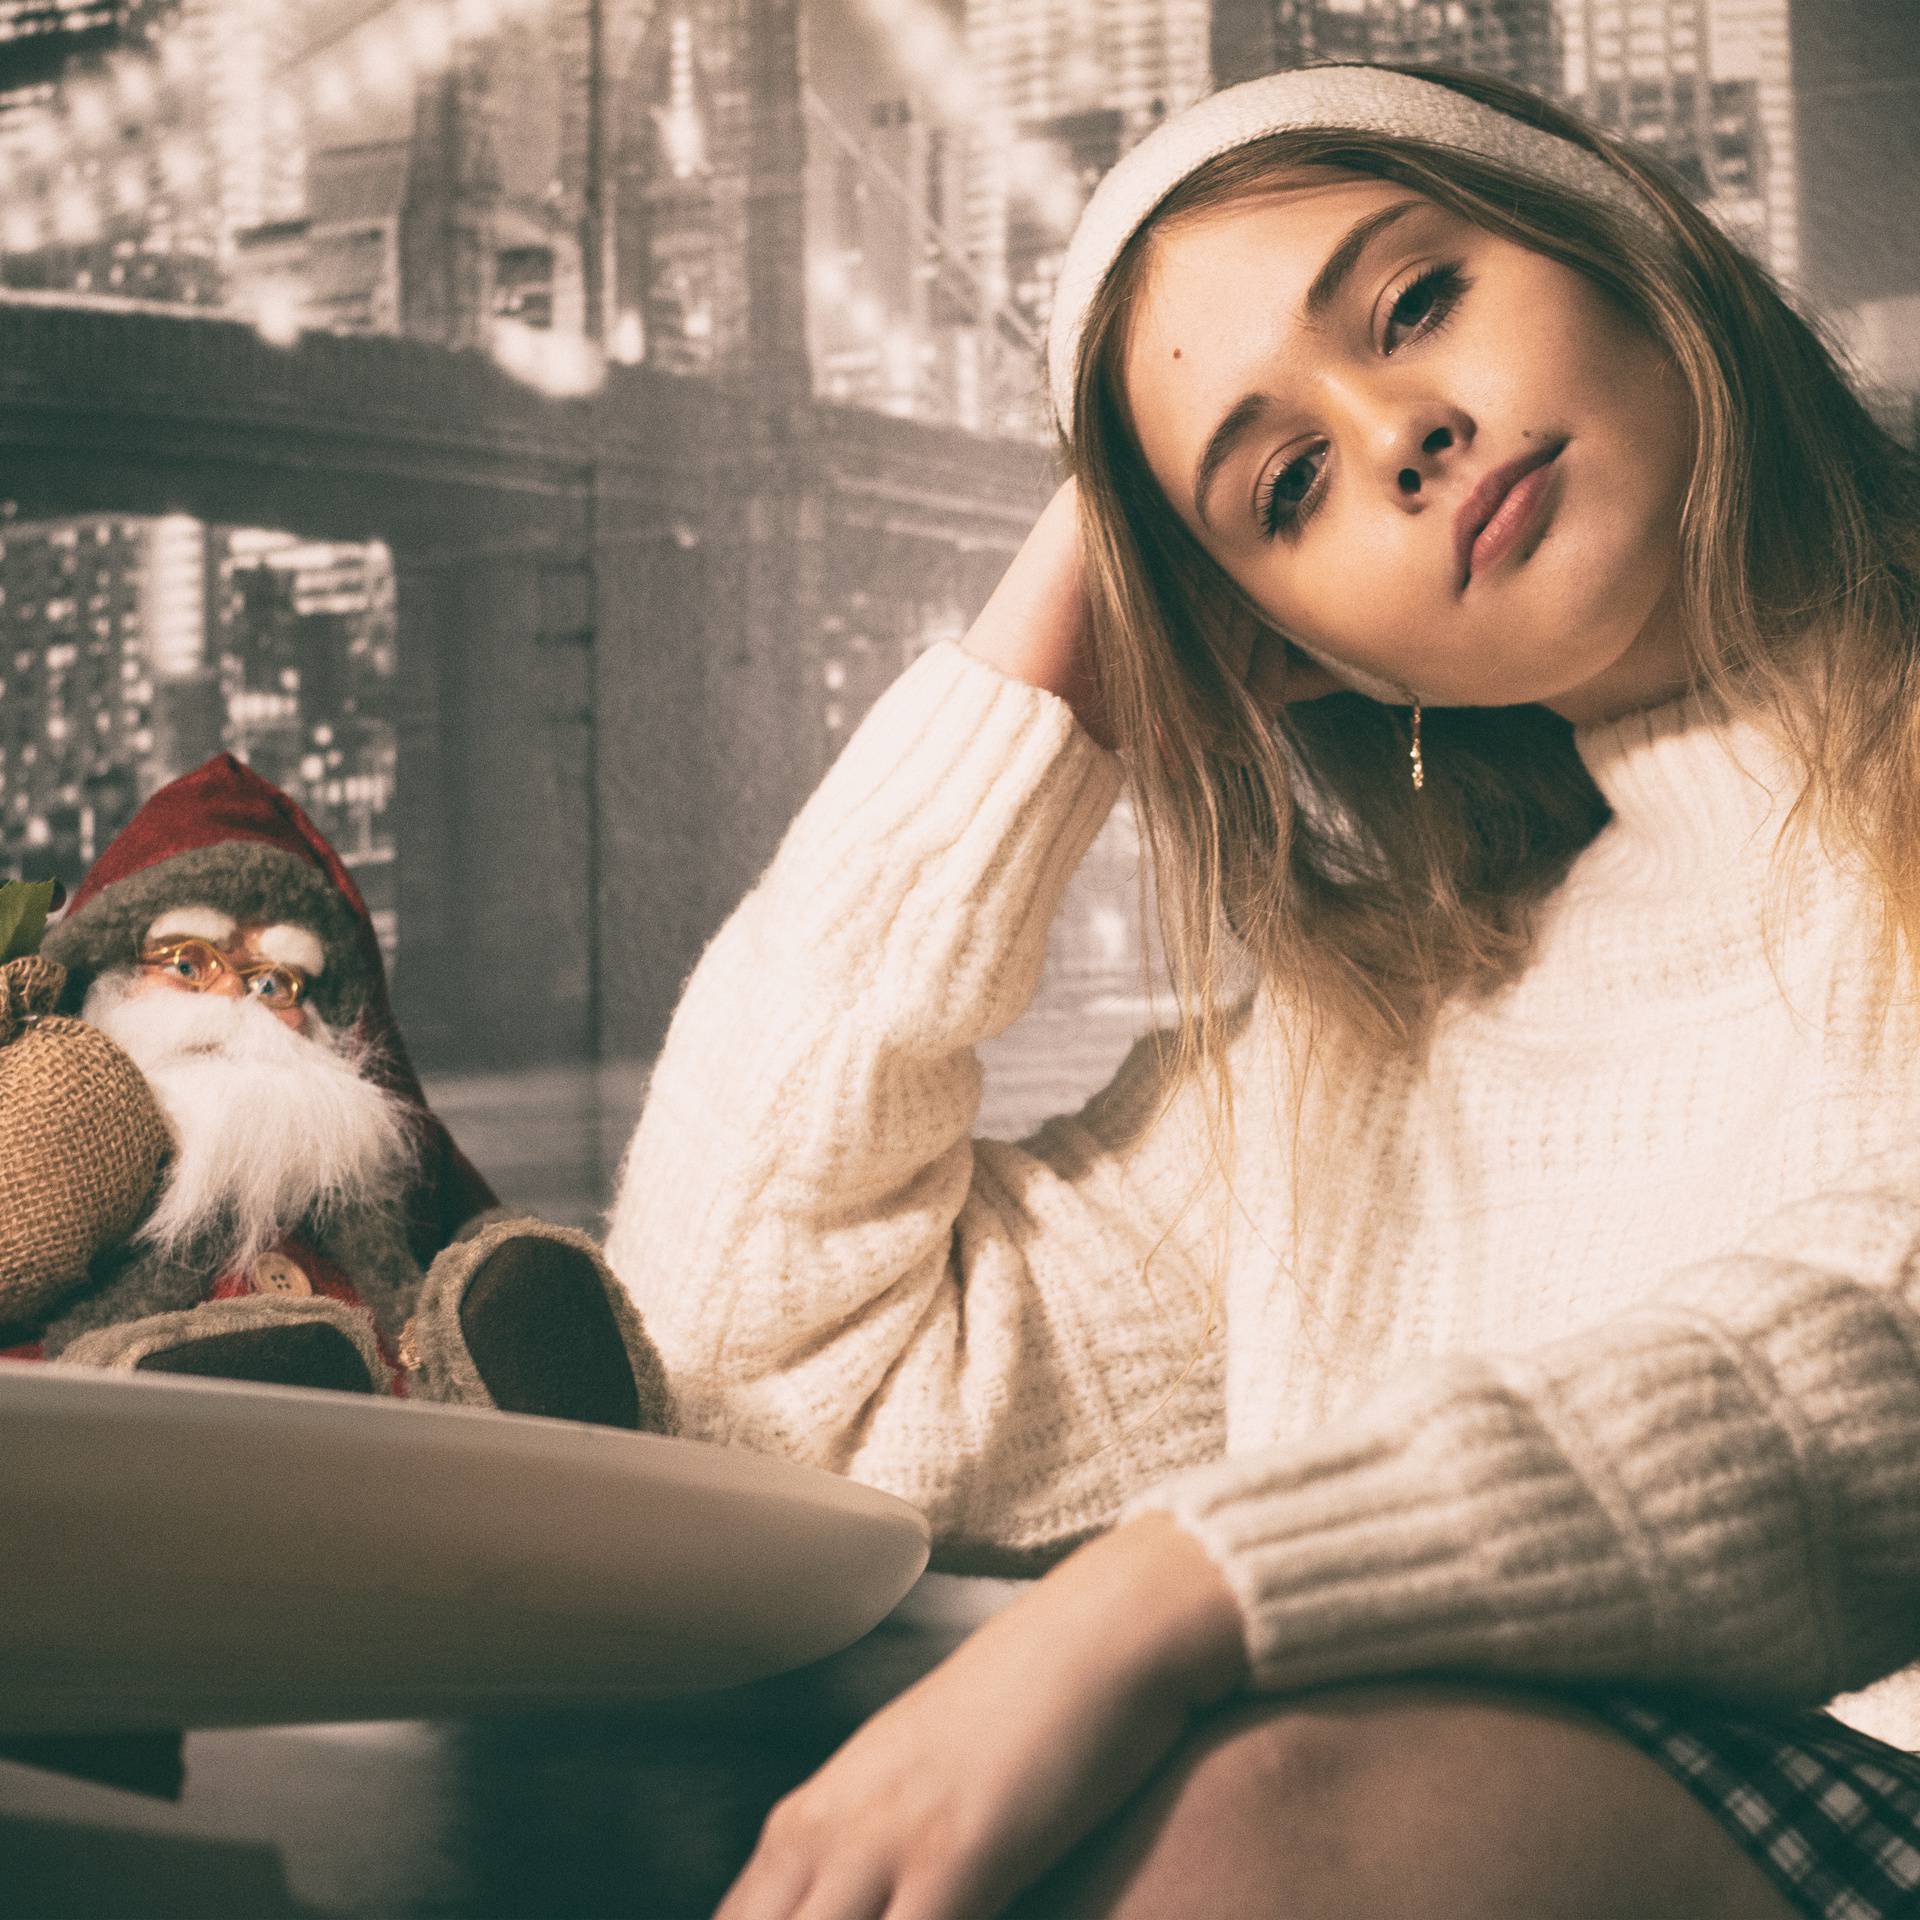 Dorotea Prosnik iz 'Superstara' objavila prvu Božićnu pjesmu ove godine: 'Djed Mraz zna'